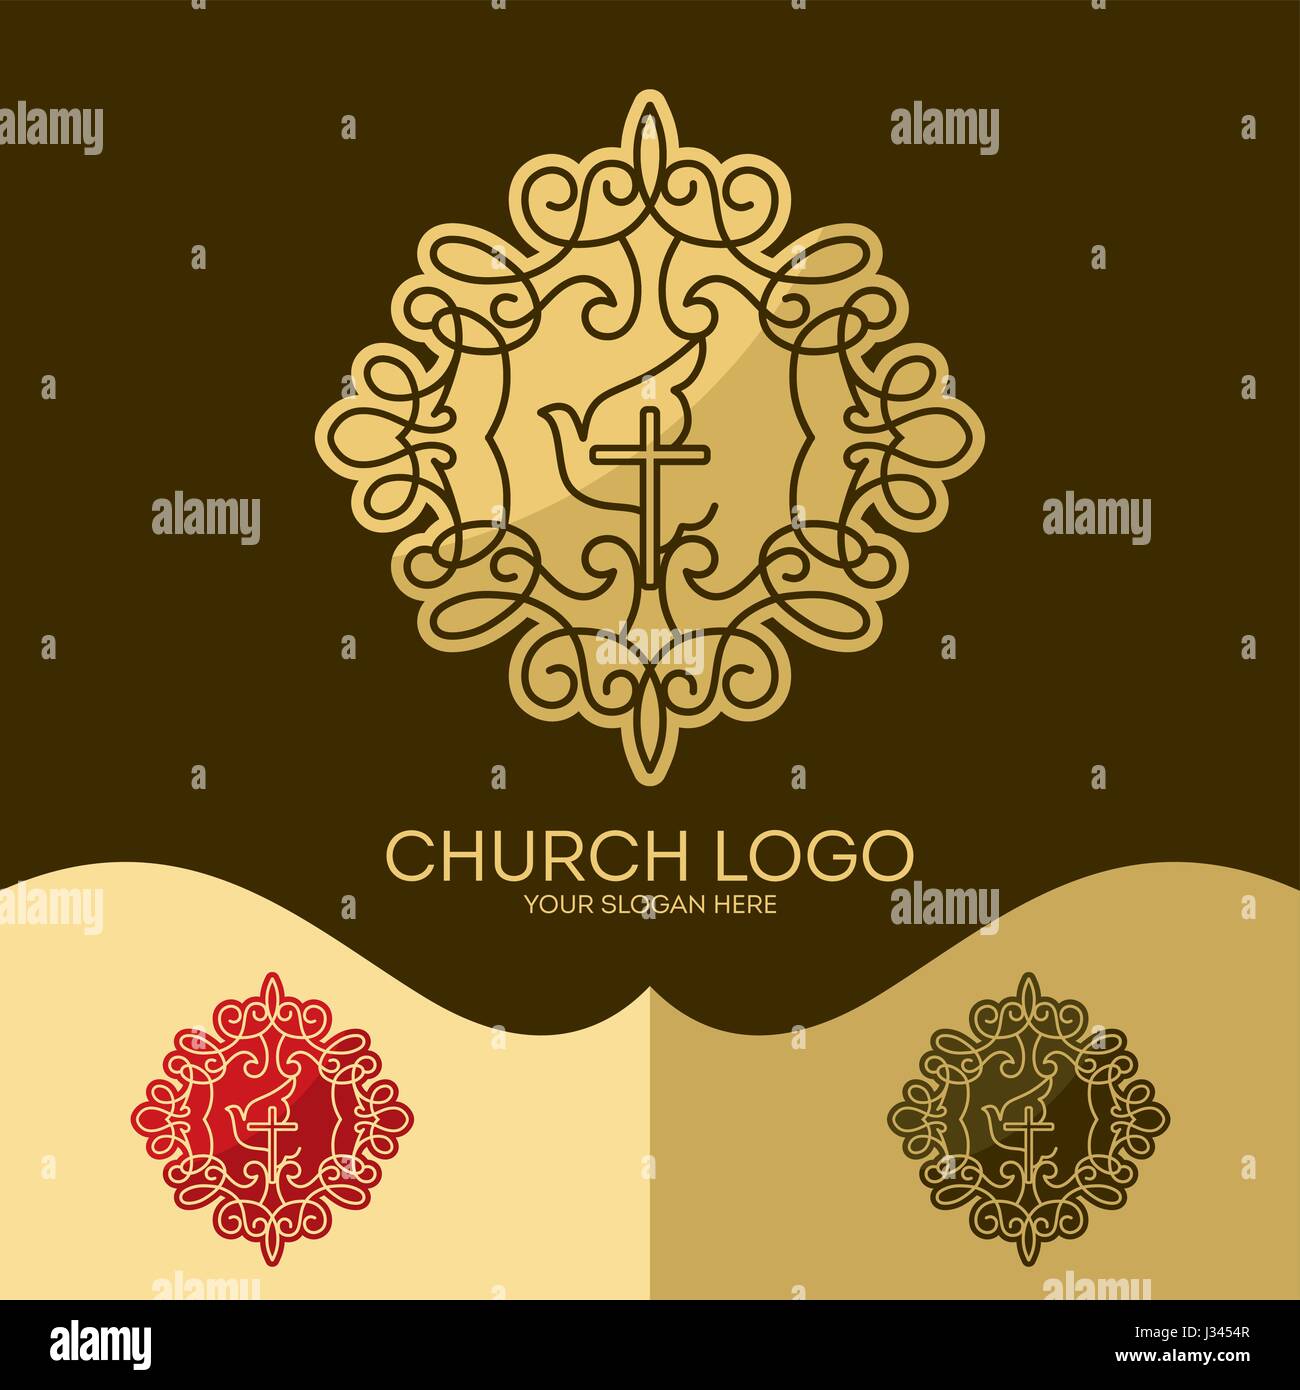 Logo der Kirche. Christliche Symbole. Das Kreuz Jesu, der Heilige Geist - Taube, eleganten Mustern. Stock Vektor